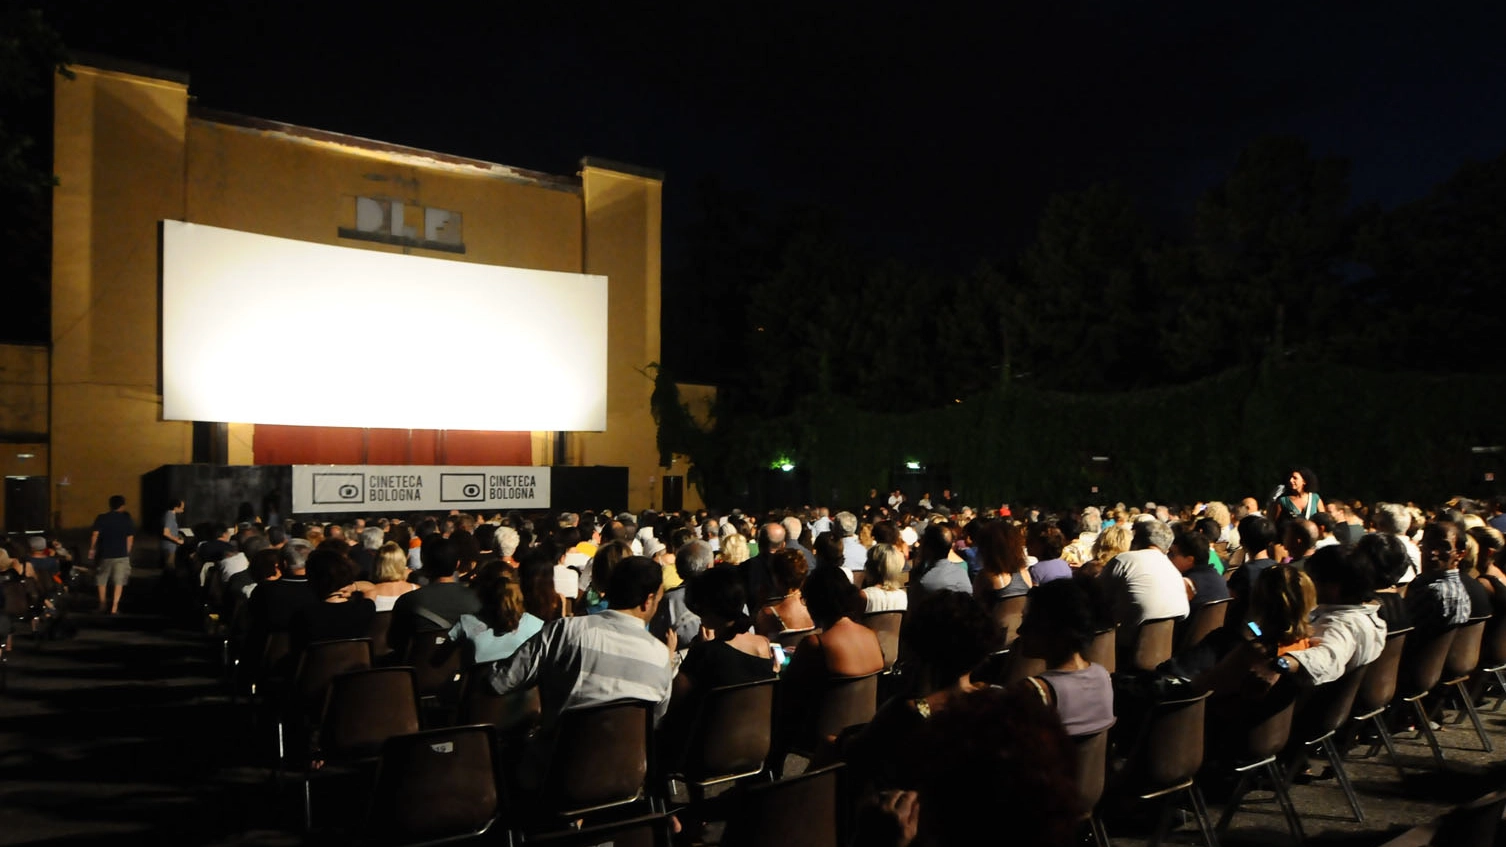 Continua la rassegna cinematografica all'Arena Puccini (Foto Schicchi)